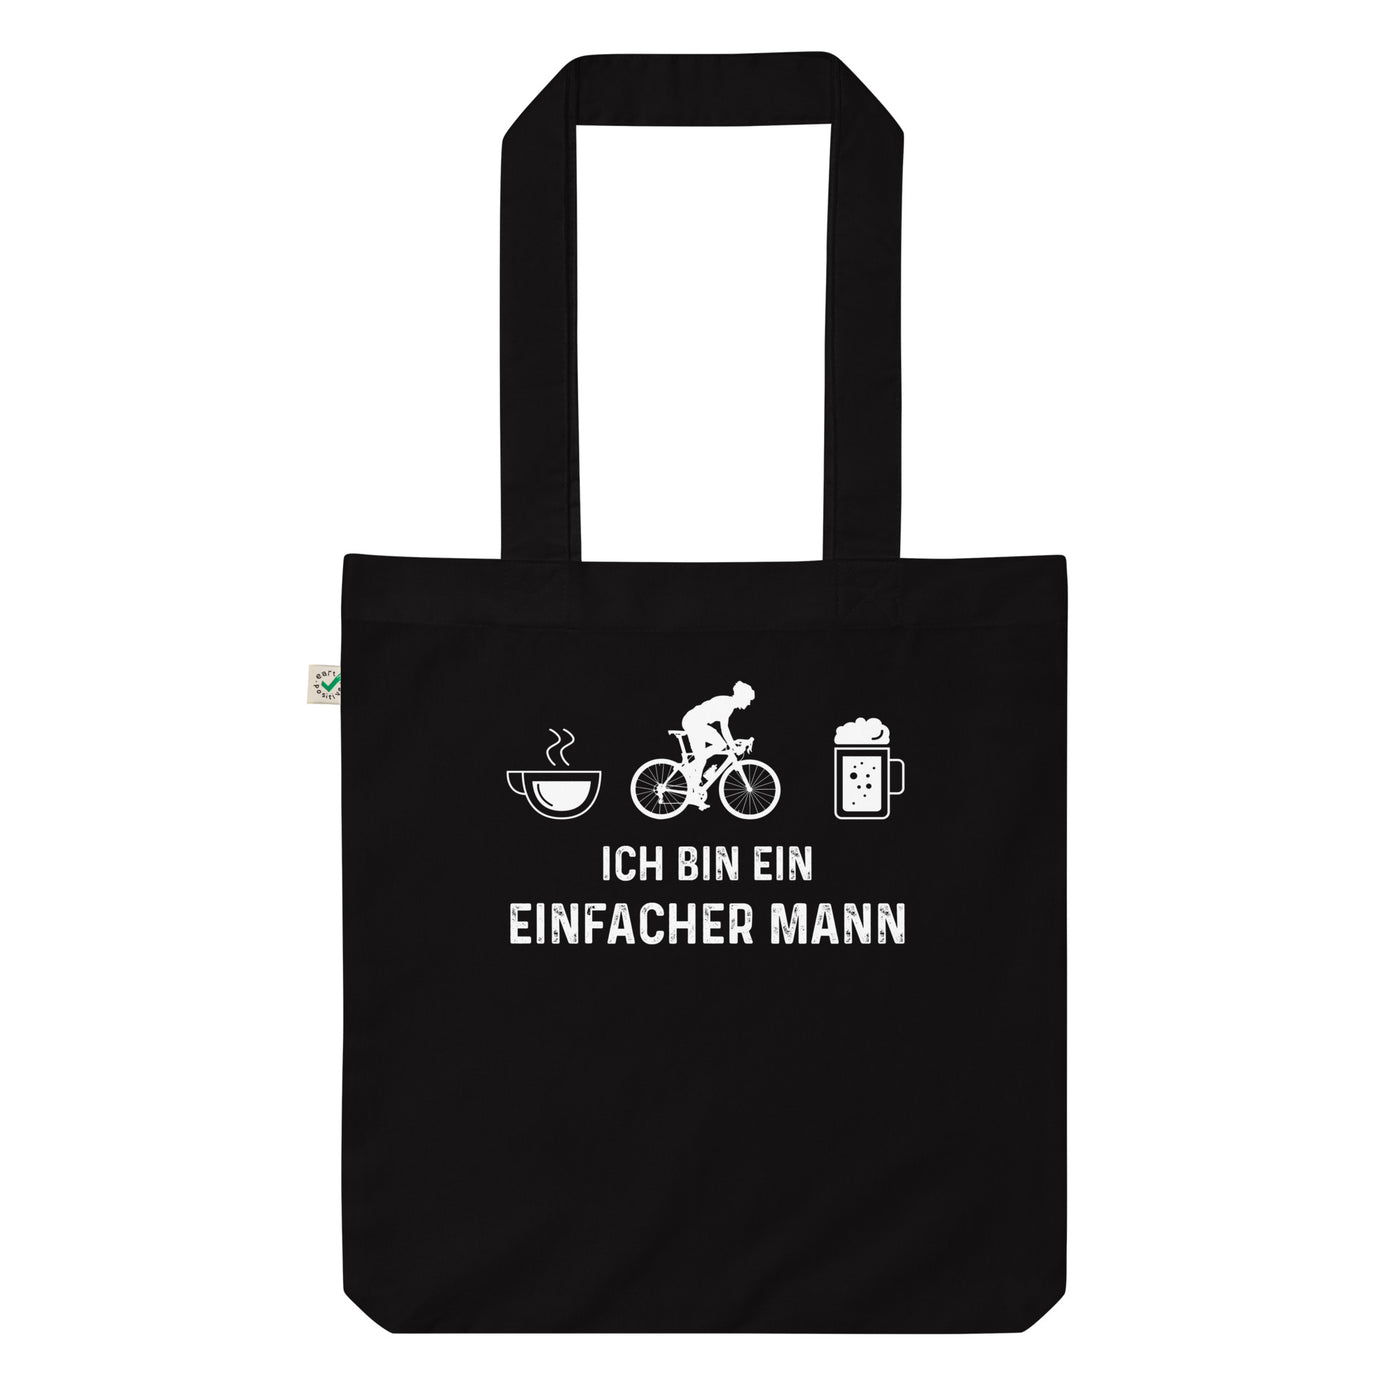 Ich Bin Ein Einfacher Mann 1 - Organic Einkaufstasche fahrrad Black